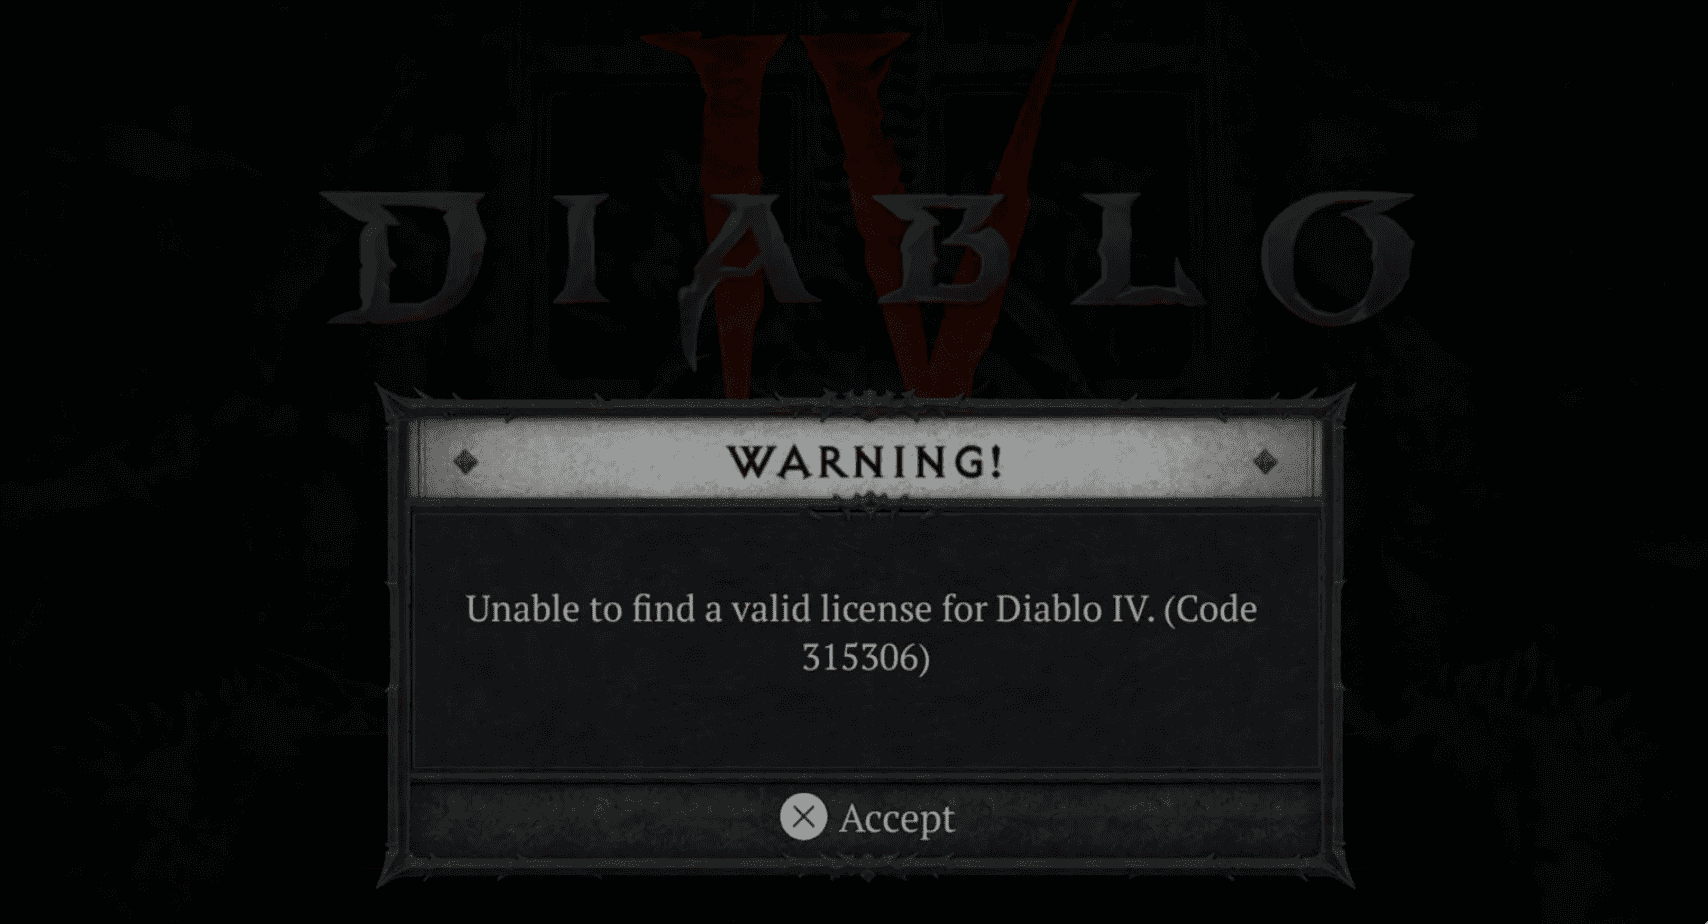 Diablo 4 error code 315306 ‘unable to find valid license’ error fix